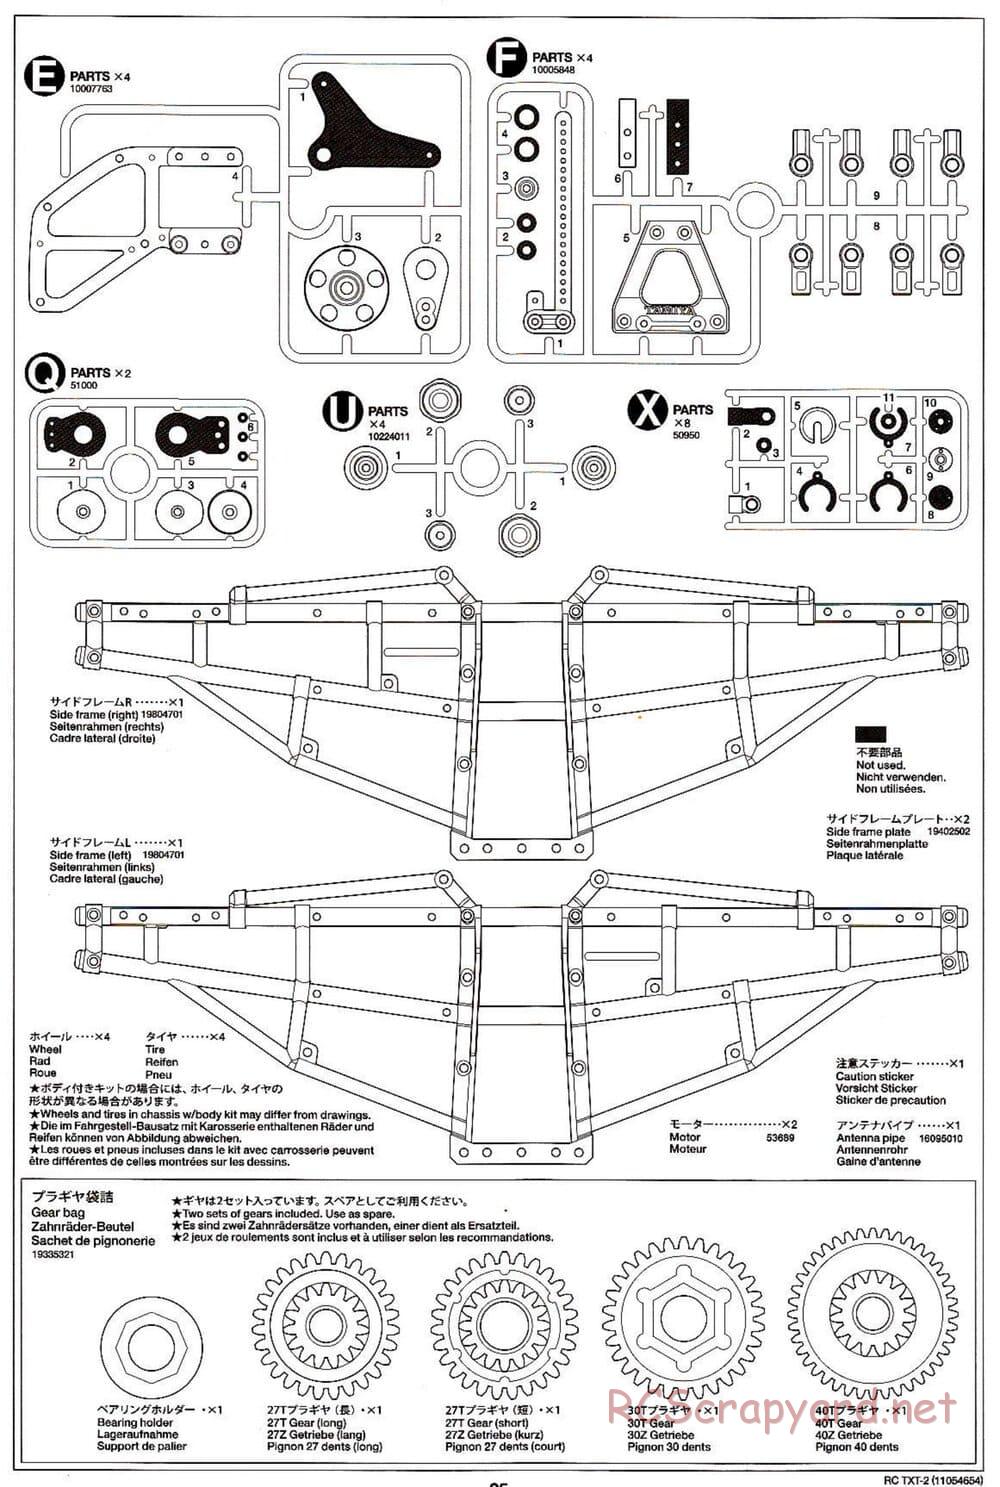 Tamiya - TXT-2 Chassis - Manual - Page 25